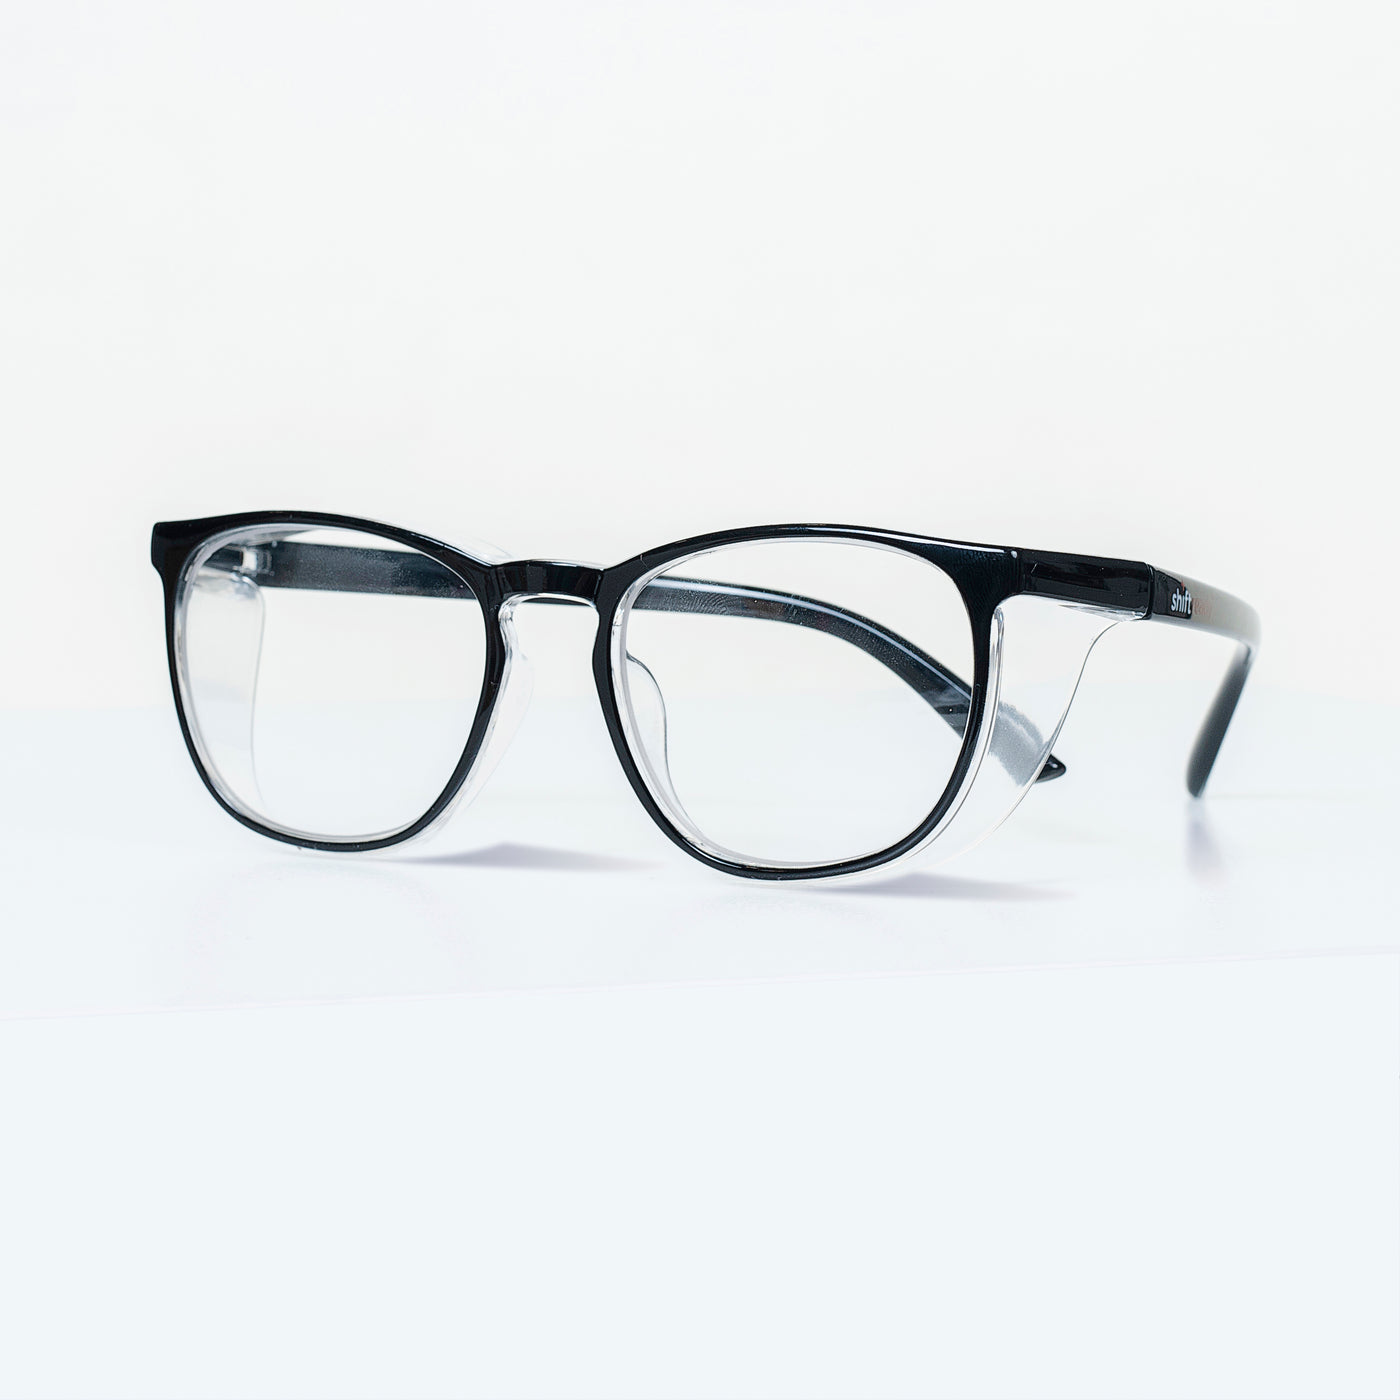 Shift Ready - Anti-fog Safety Glasses - Black